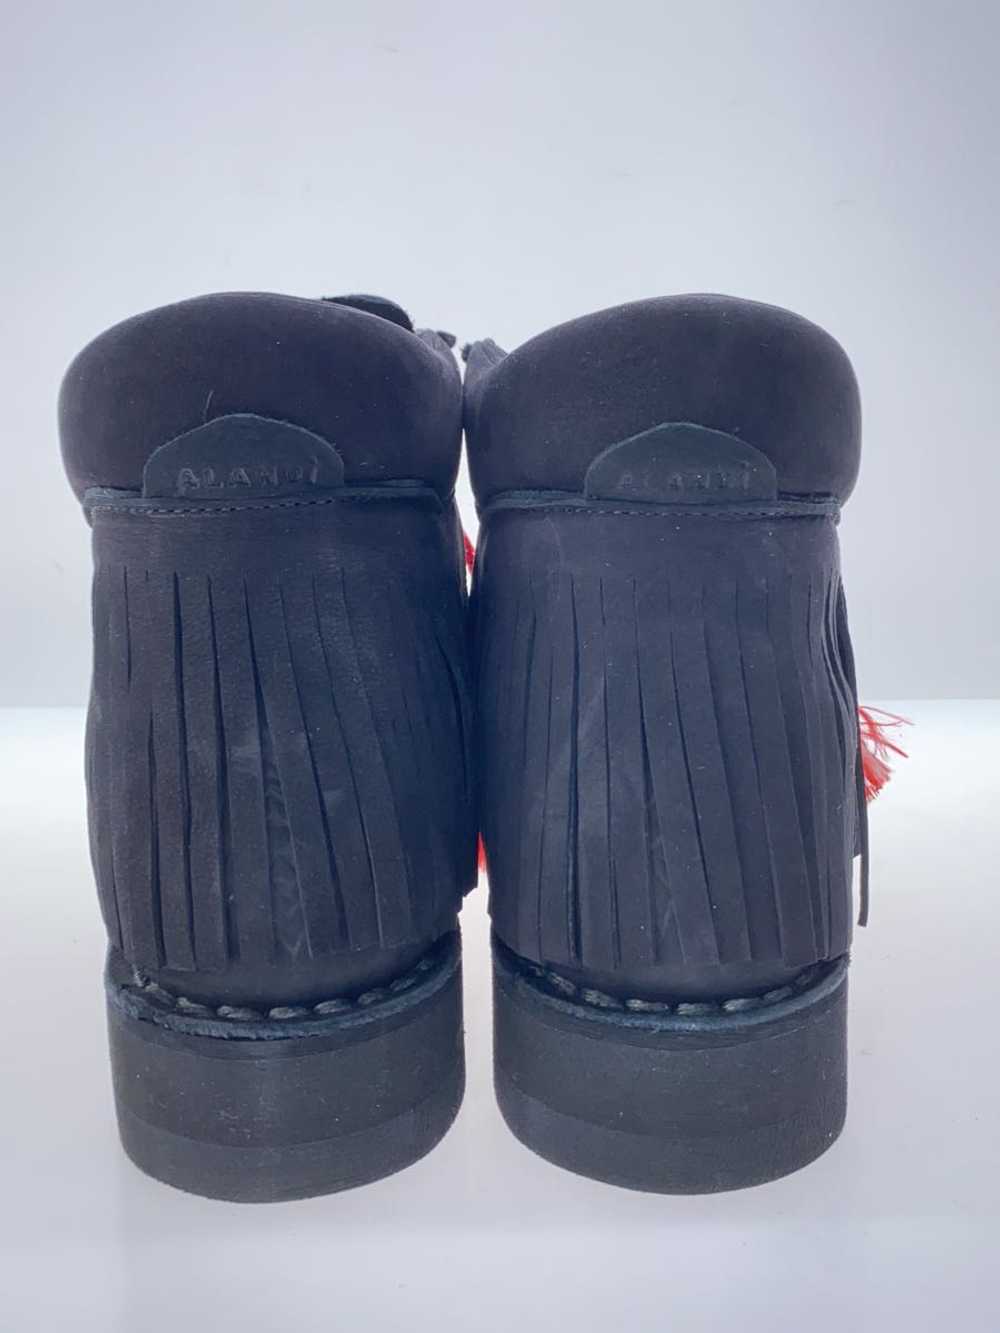 Diemme Lace Up Boots/42/Blk/Leather/ Alanui Shoes… - image 6